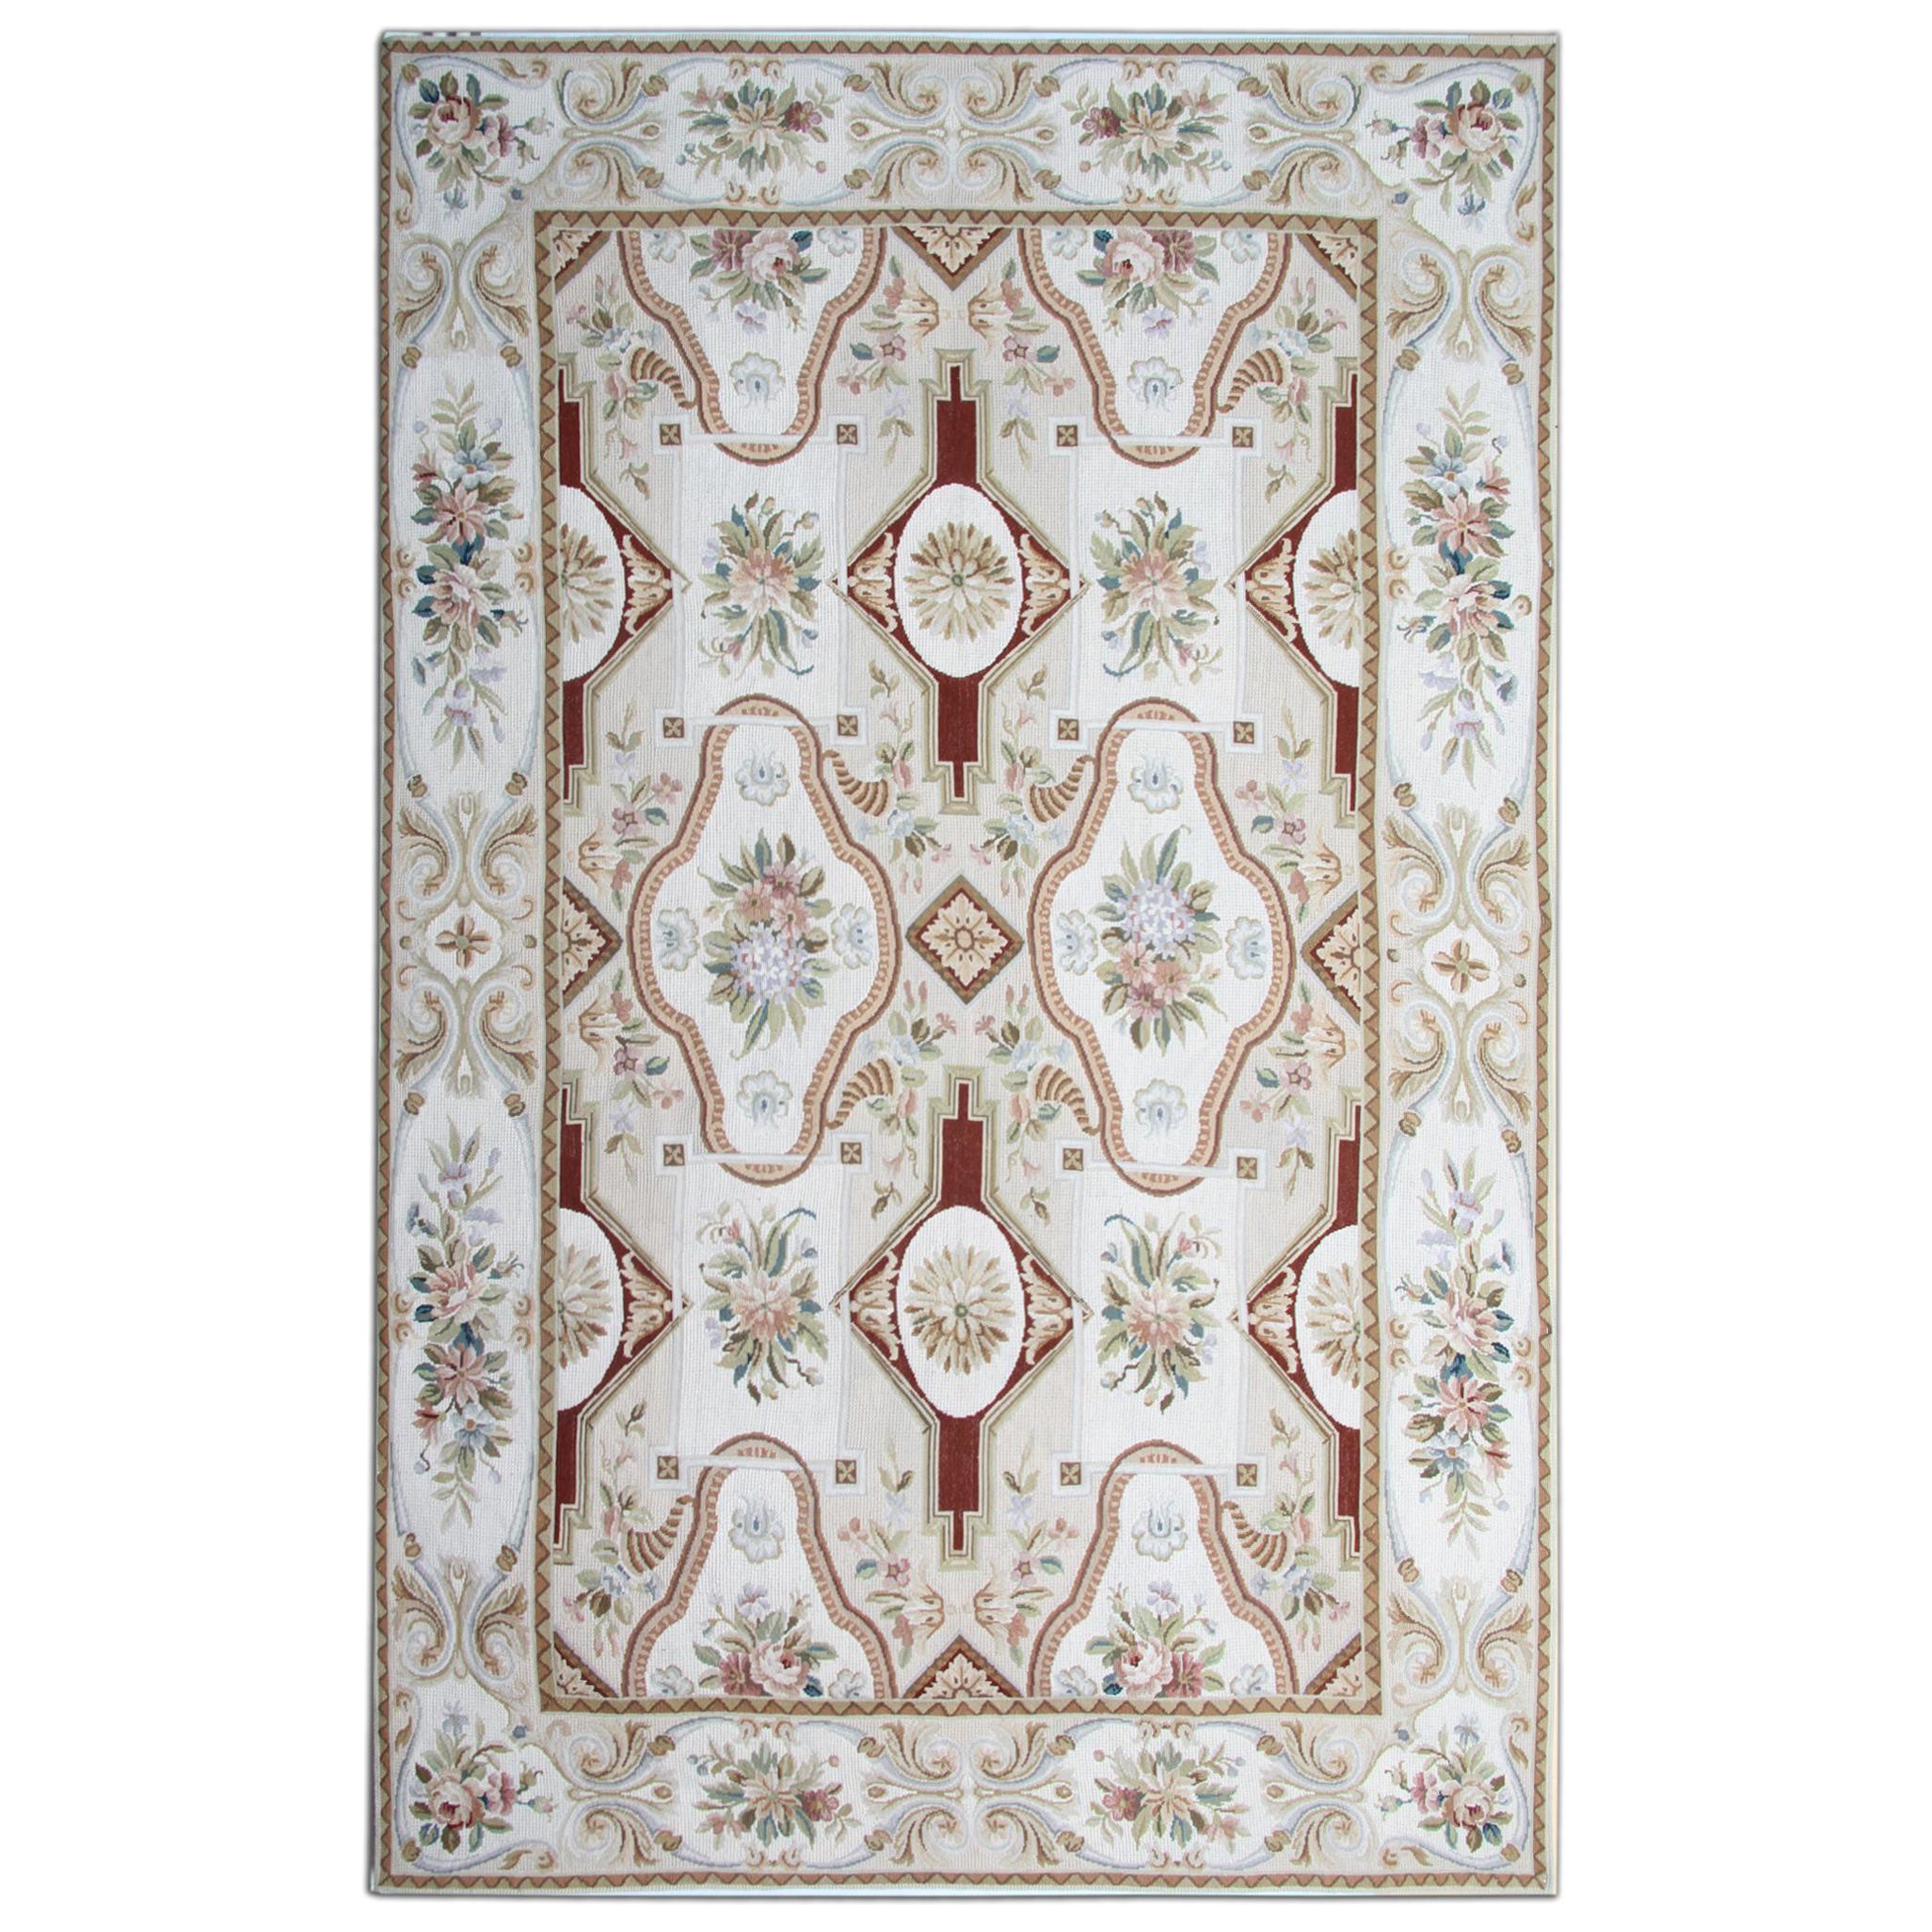 Traditioneller Teppich im Aubusson-Stil aus handgewebter Wolle mit Gobelinstickerei